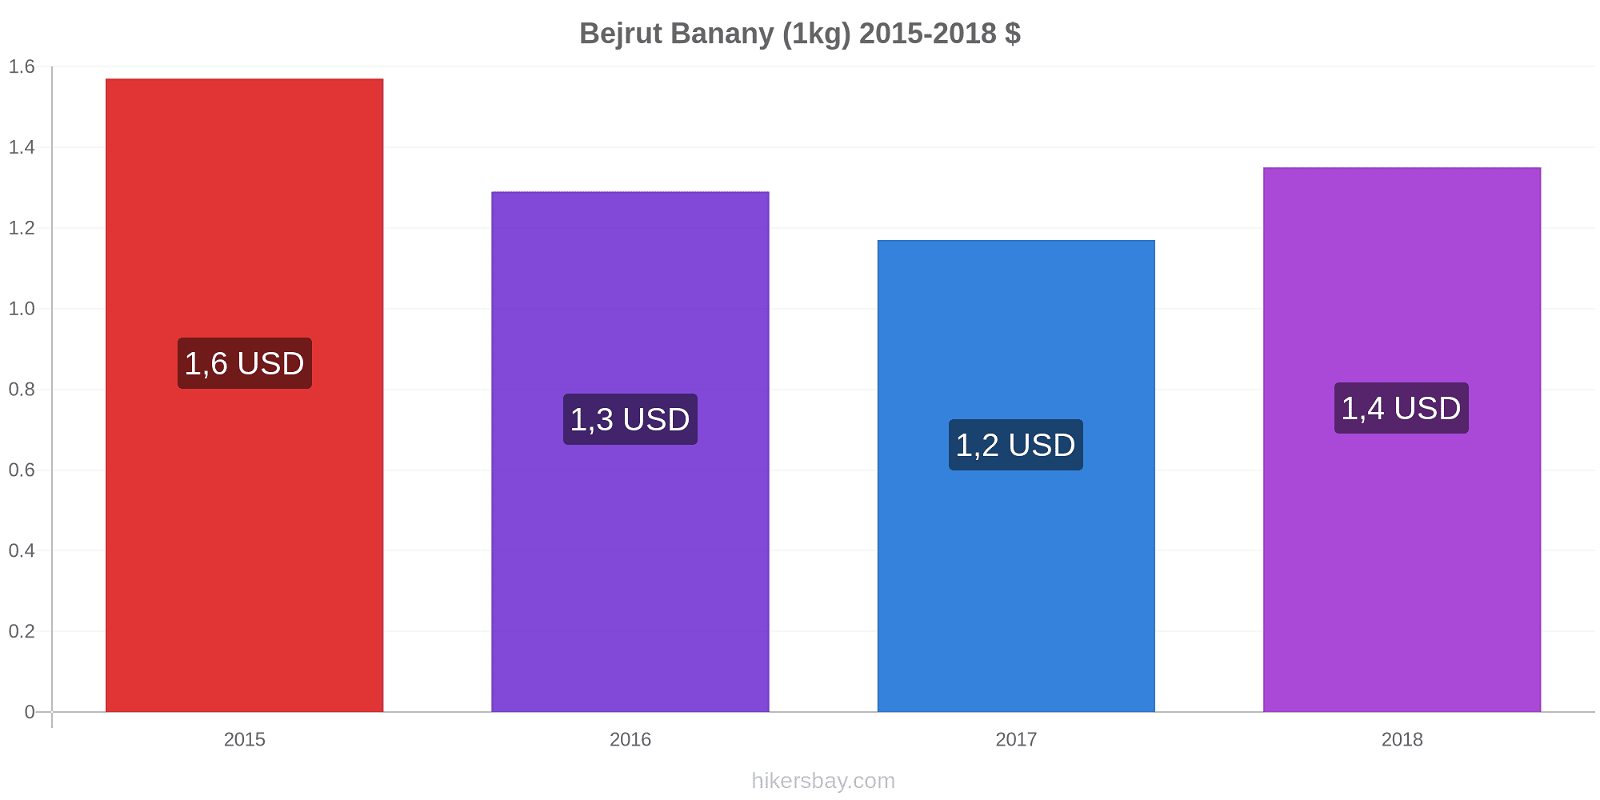 Bejrut zmiany cen Banany (1kg) hikersbay.com